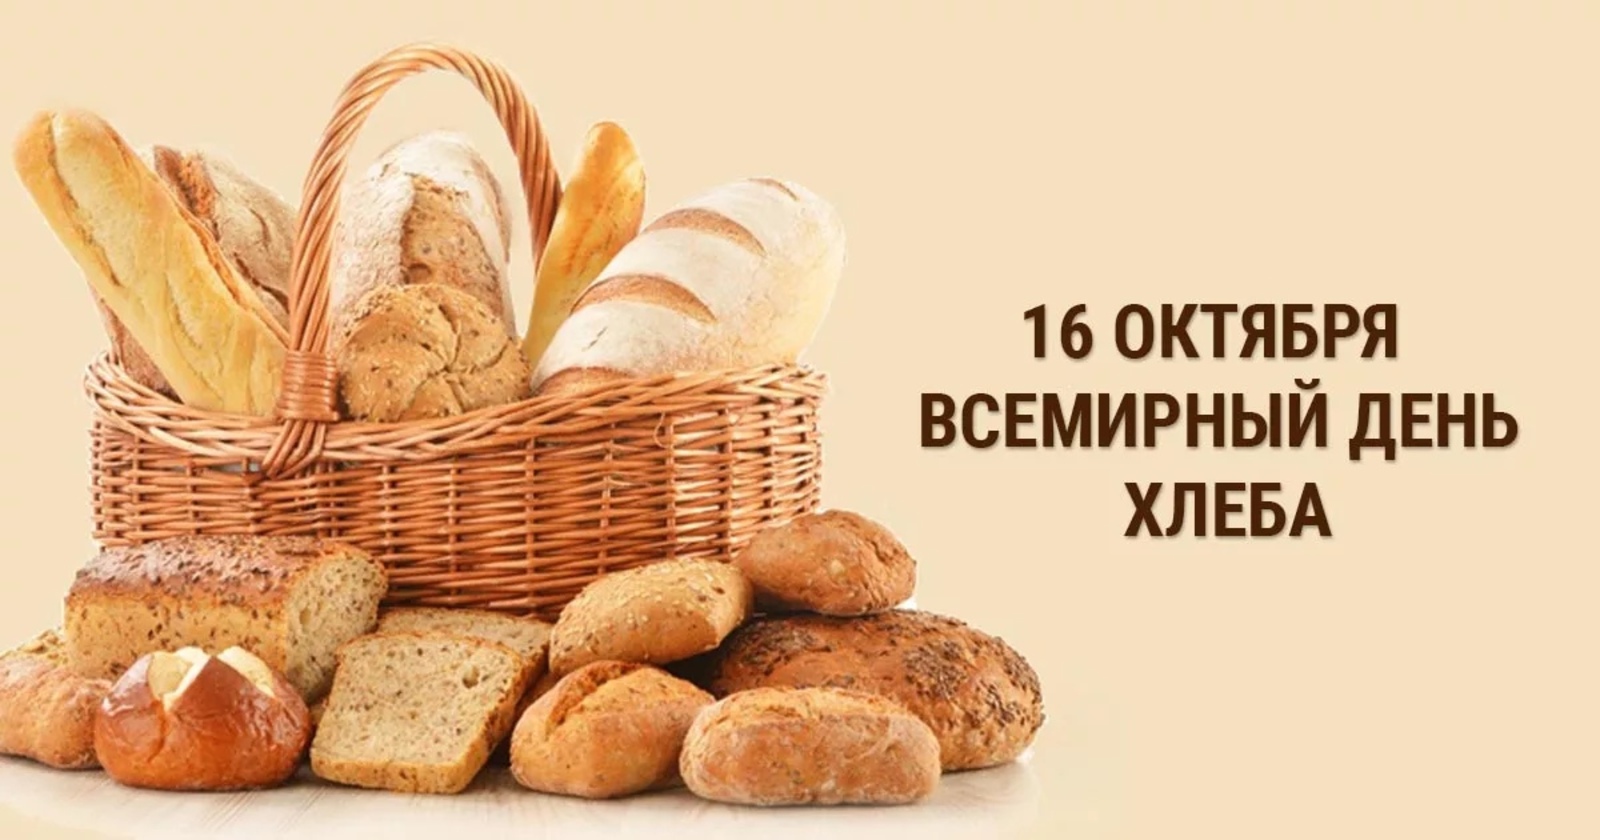 Сегодня во всём мире отмечается День хлеба